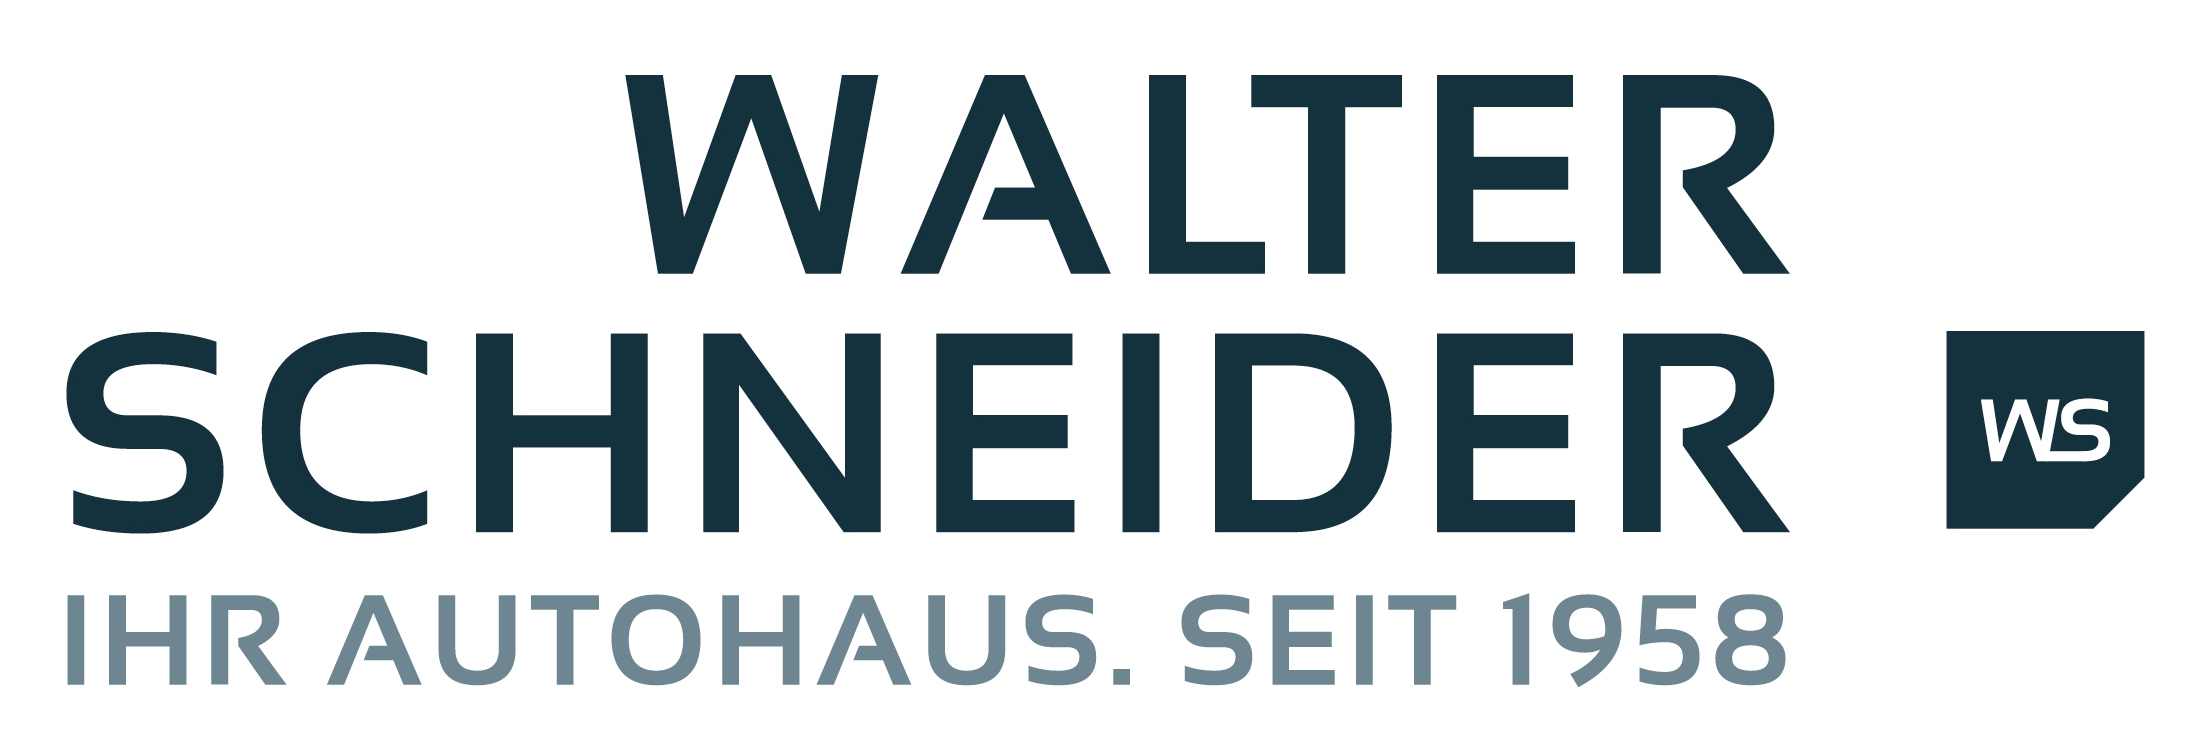 Walter Schneider Fludersbach GmbH & Co. KG